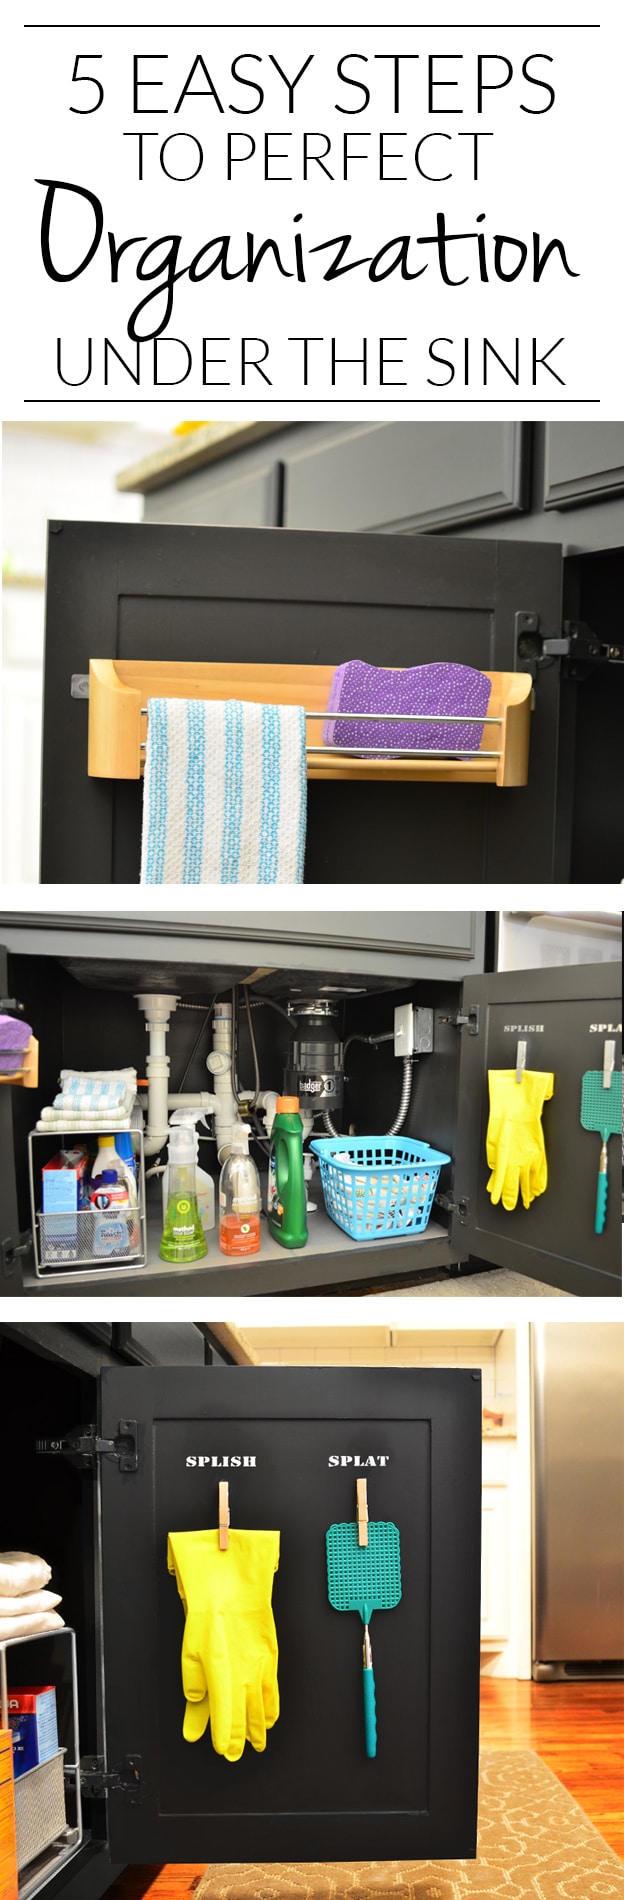 Under Kitchen Sink Organization Ideas That Add Storage